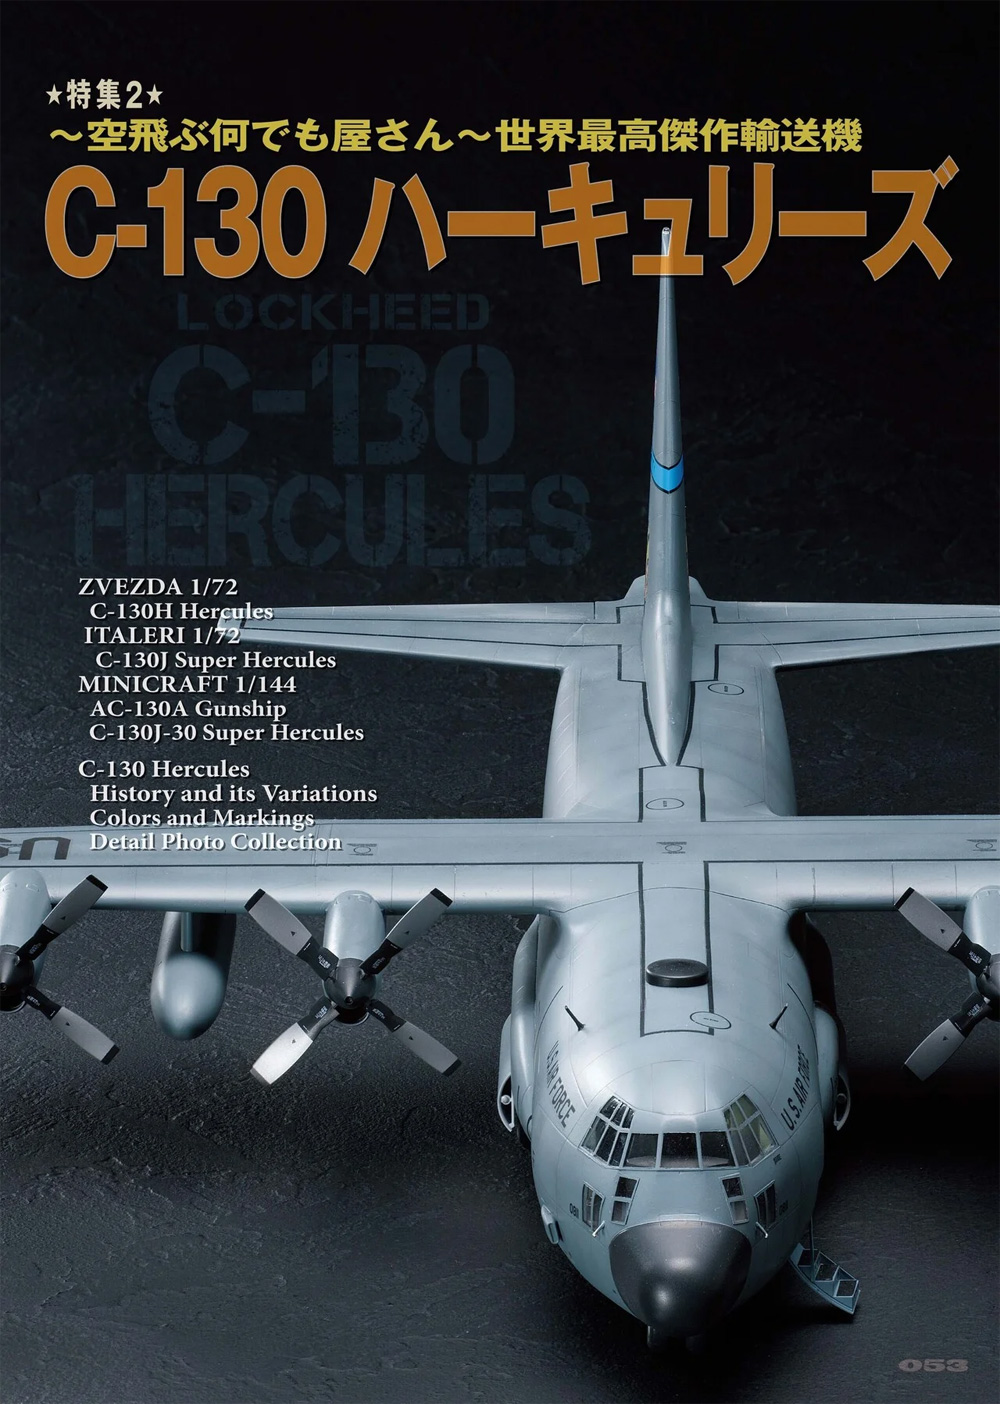 飛行機模型スペシャル 34 日本海軍夜間戦闘機 / 世界最高傑作輸送機 C-130 ハーキュリーズ 本 (モデルアート 飛行機模型スペシャル No.034) 商品画像_3